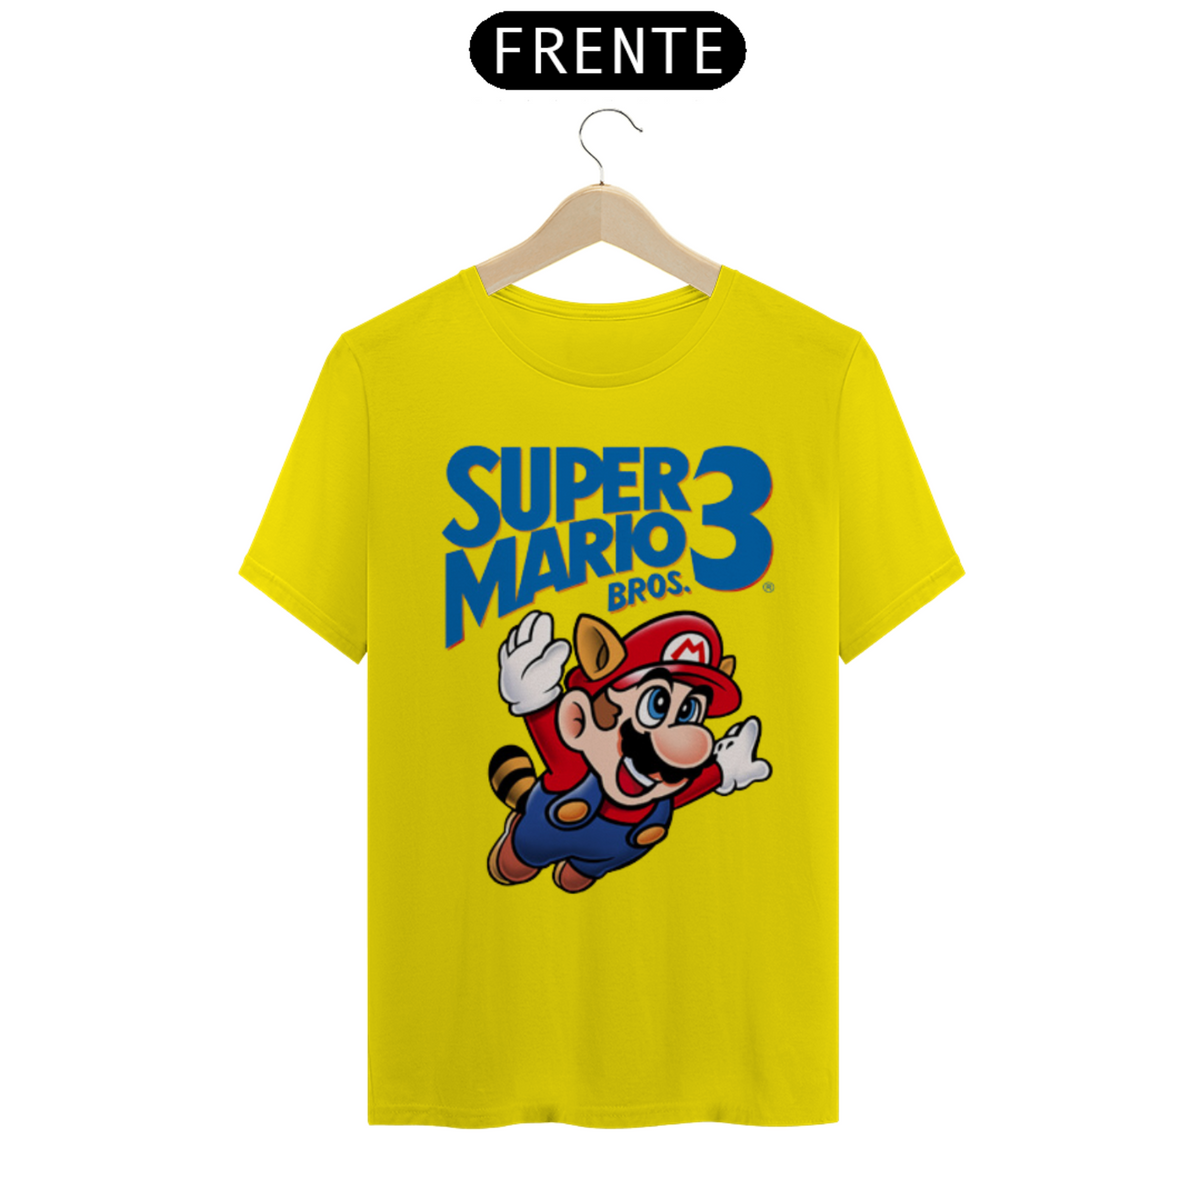 Nome do produto: Super Mario Bros 3